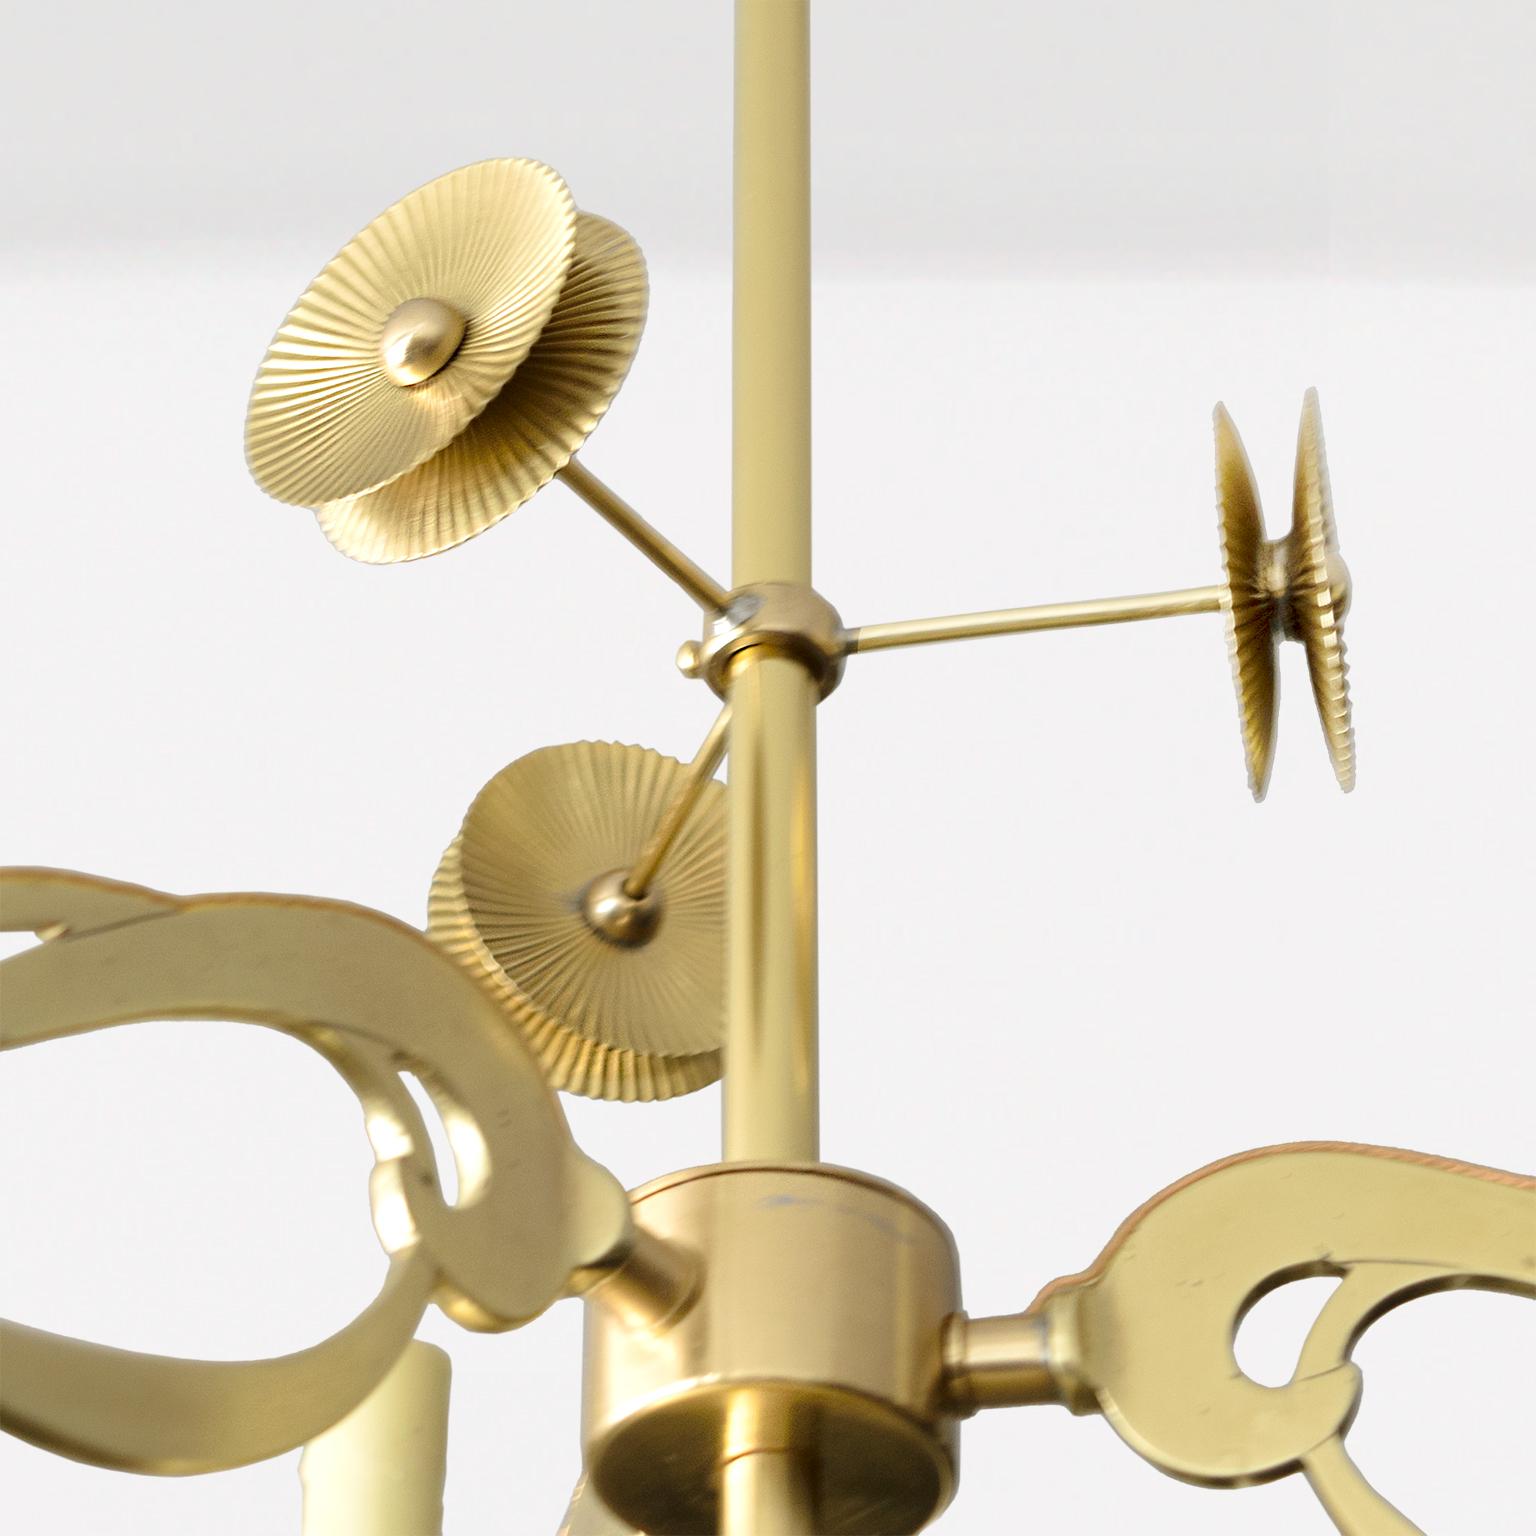 20th Century Swedish Jugendstil, Art Nouveau 3-arm chandelier of polished brass, B For Sale